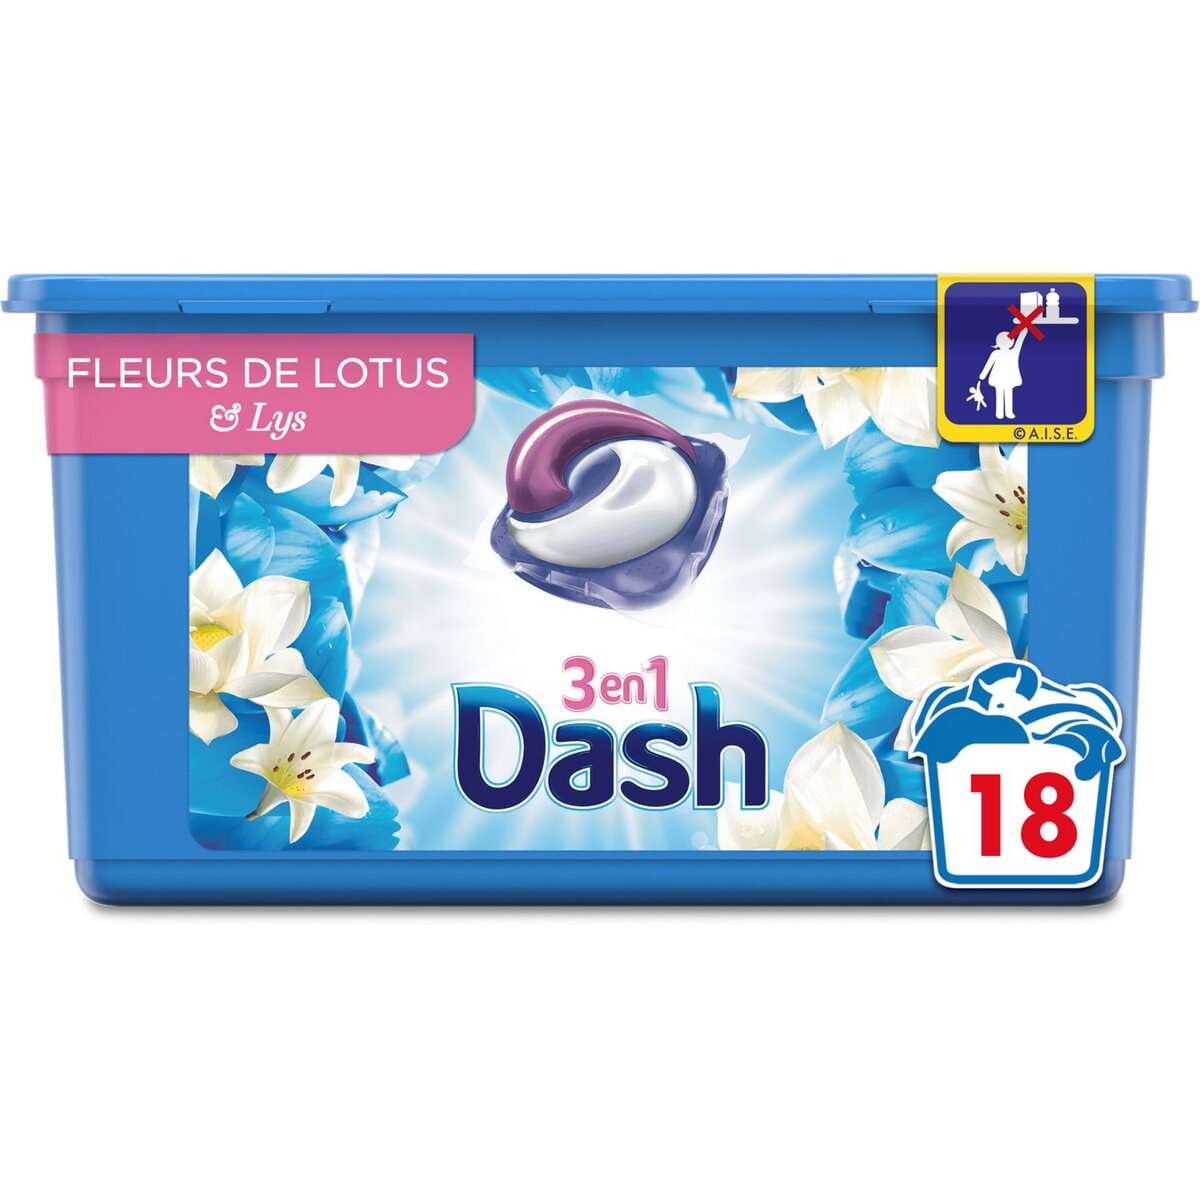 DASH Dash Lessive capsules fleurs de lotus & lys fraîcheur Lenor 18 lavages 18 lavages 18 capsules